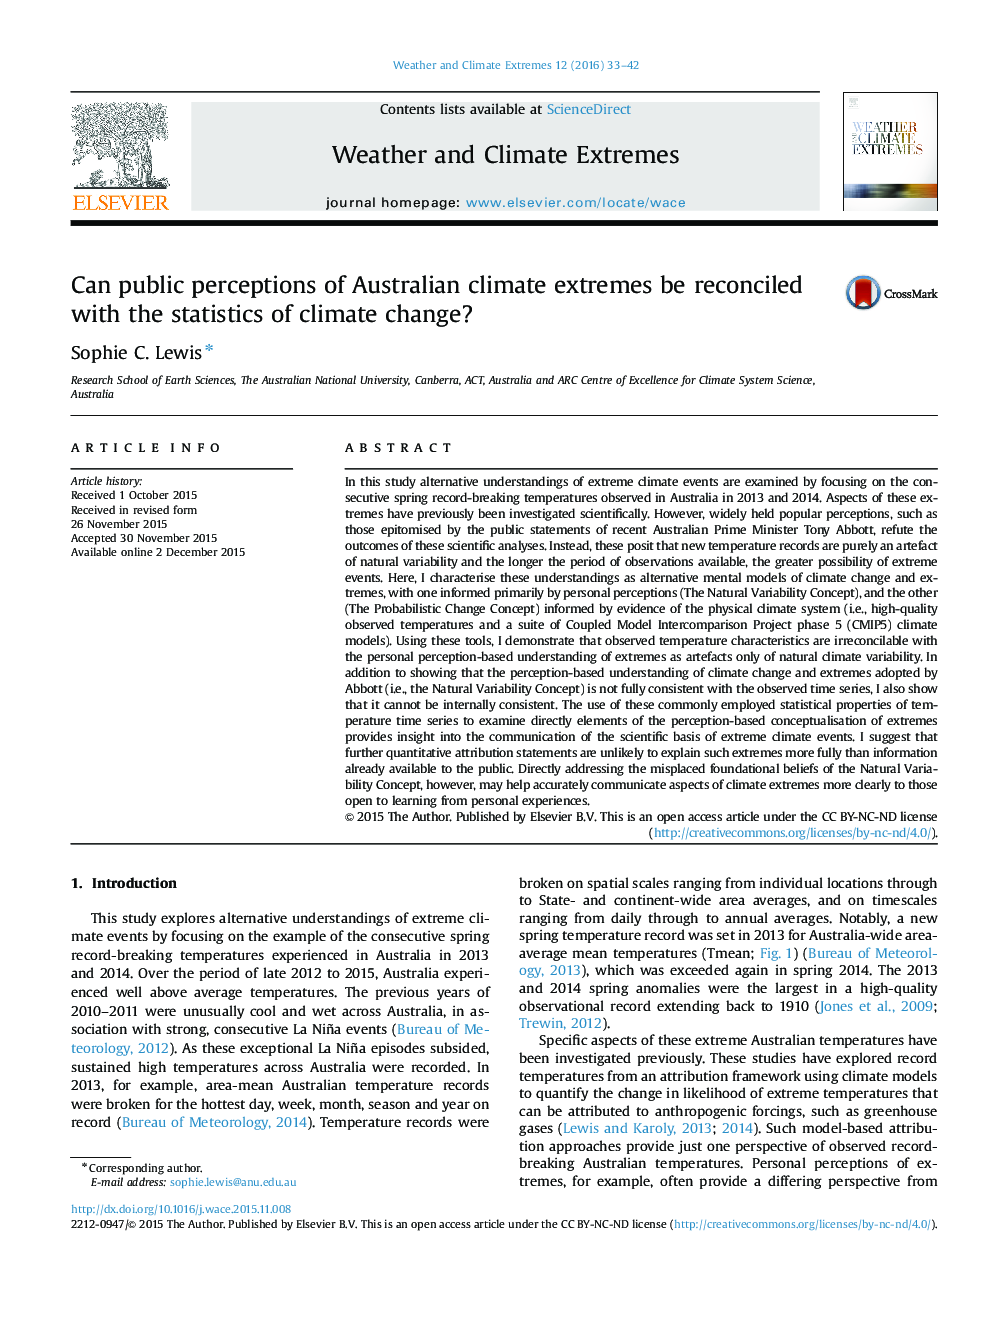 آیا درک عمومی از شدت آب و هوا استرالیا با آمار تغییرات آب و هوایی می تواند مطابقت داشته باشد؟